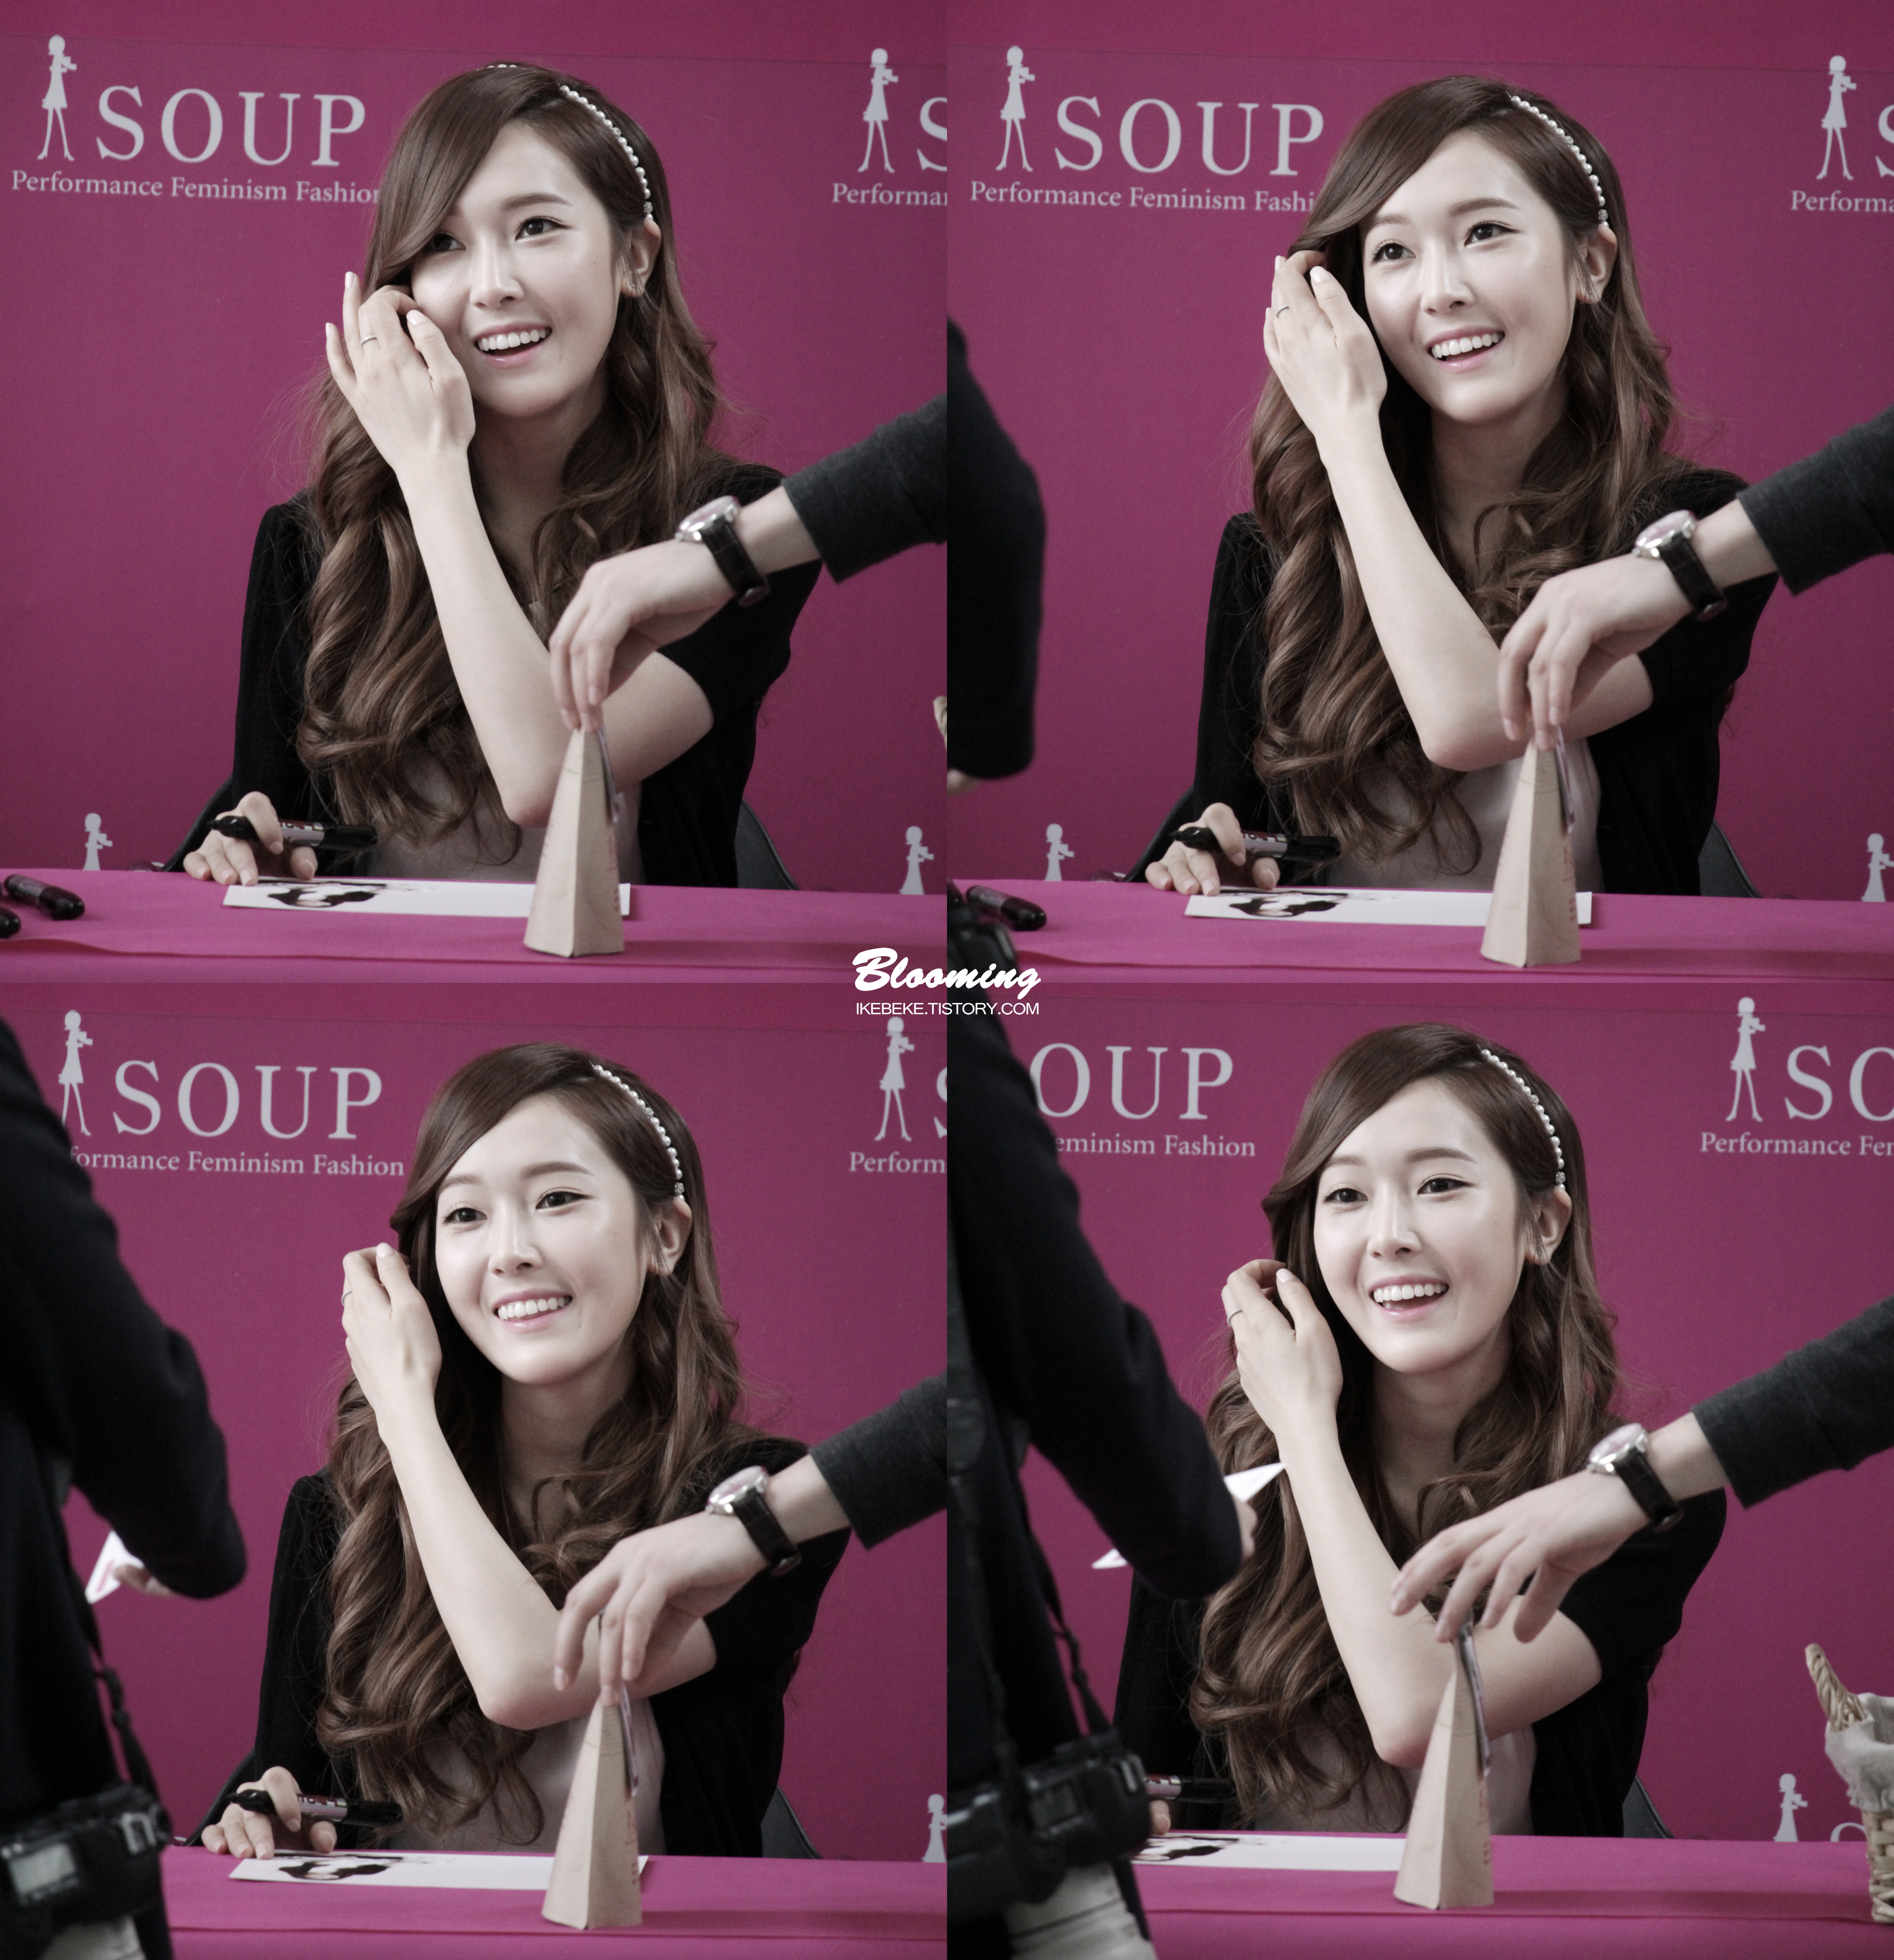 [PIC][04-04-2014]Jessica tham dự buổi fansign cho thương hiệu "SOUP" vào trưa nay - Page 3 23344941533F8A2E033FE1